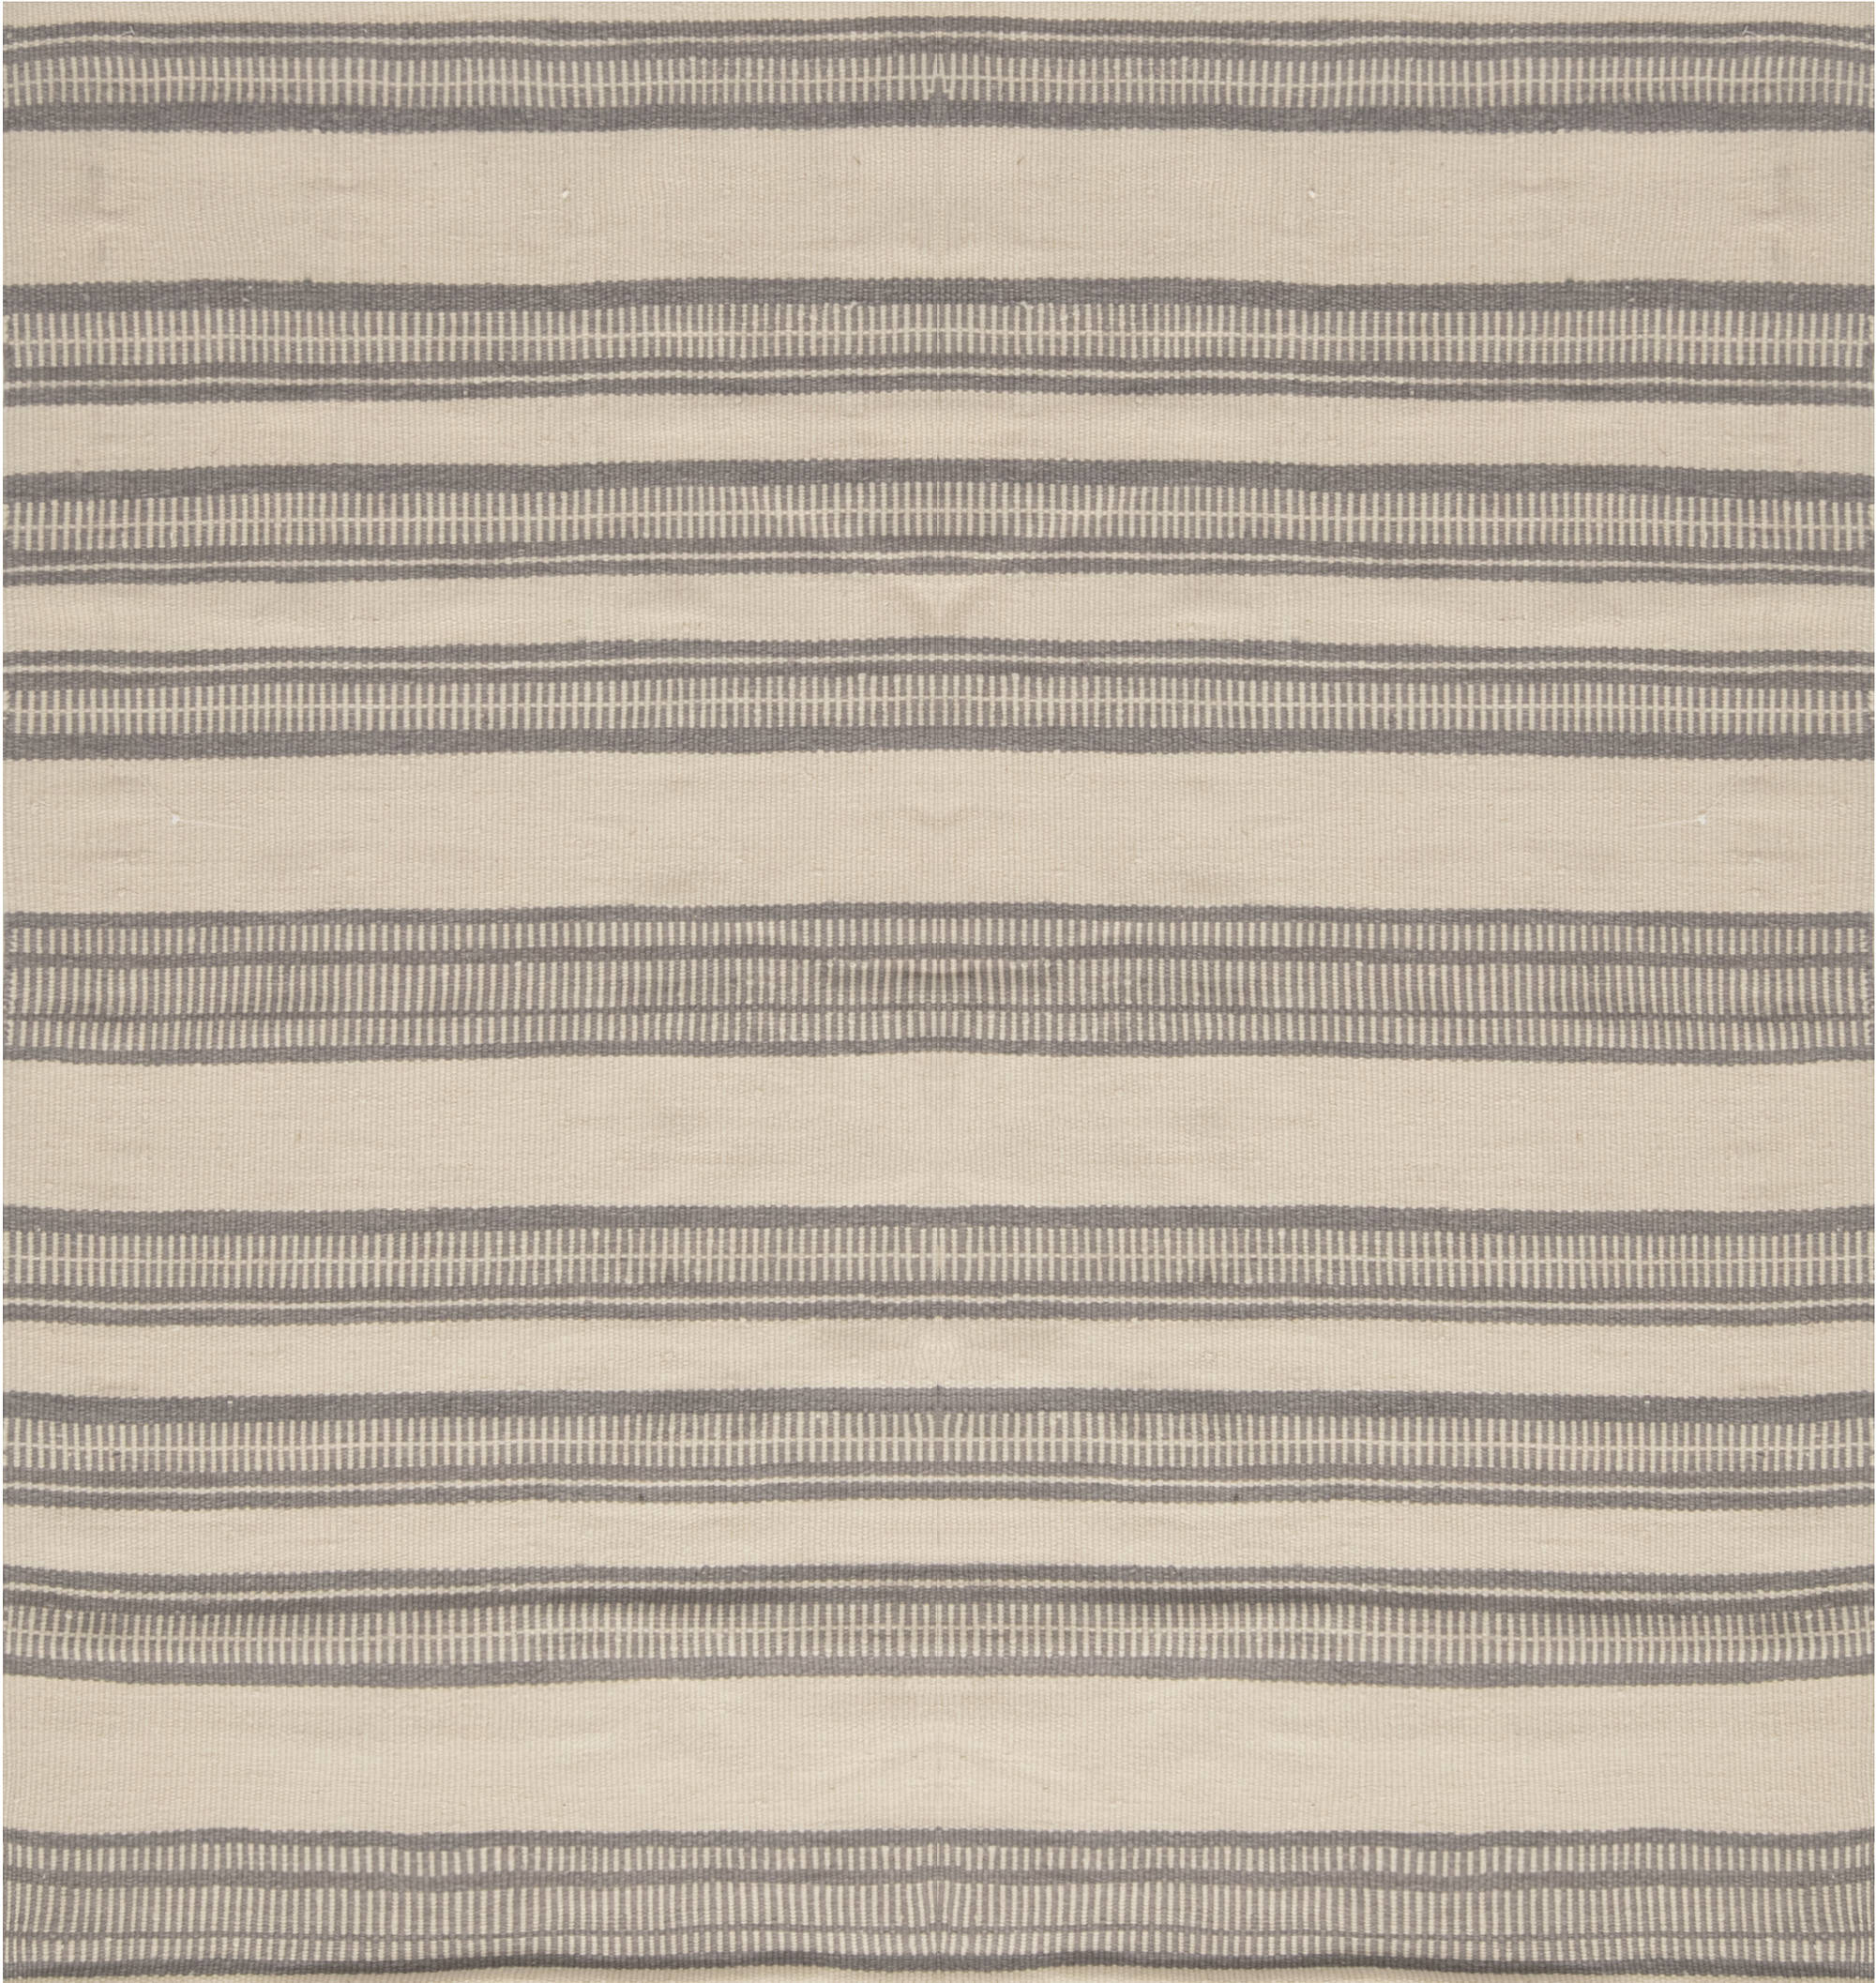 Doris Leslie Blau Collection Brown, Modern Flat Weave Rugs